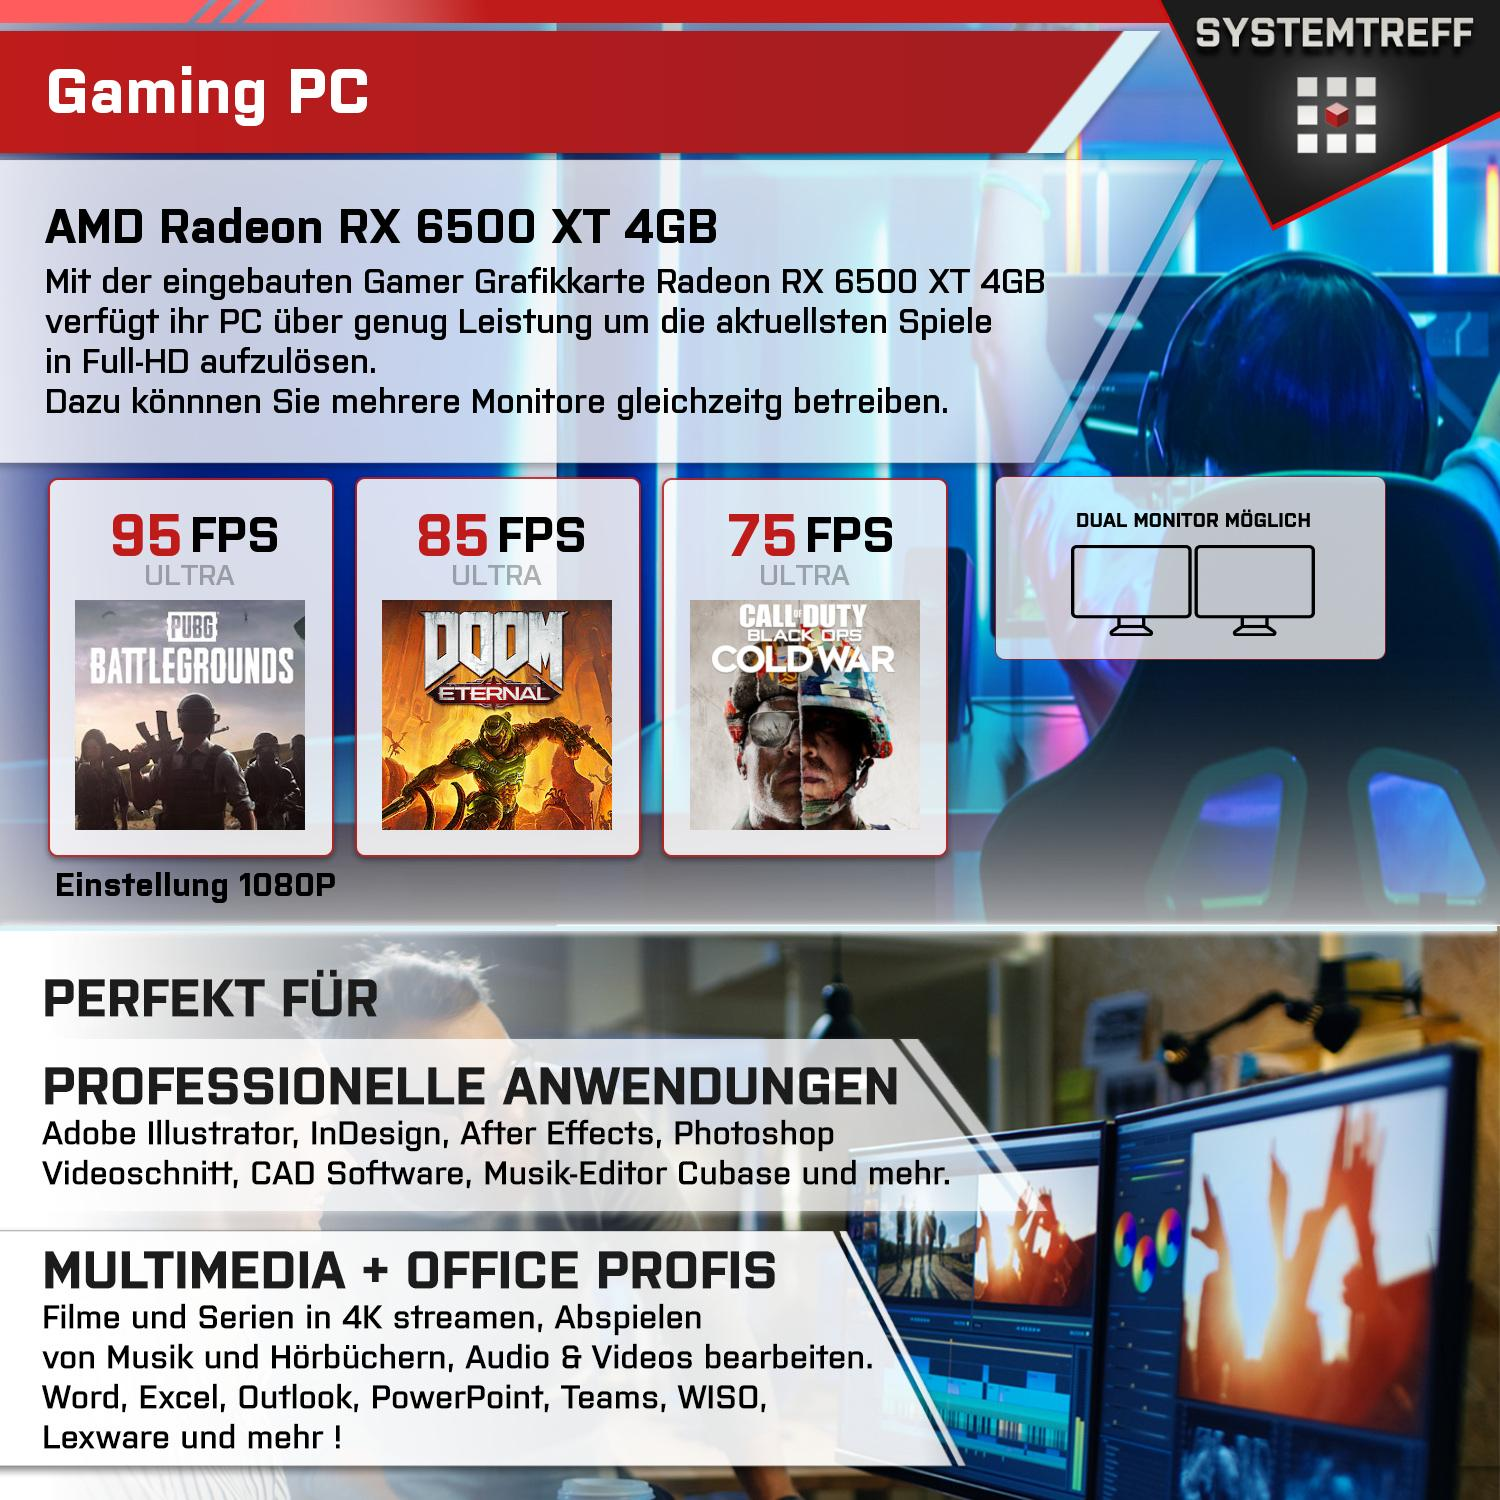 SYSTEMTREFF Gaming Komplett AMD Prozessor, mit 5 RX 5600X GB Ryzen GB Radeon 6500 XT 4 4GB, GB mSSD, 512 PC RAM, 16 Komplett 5600X, AMD